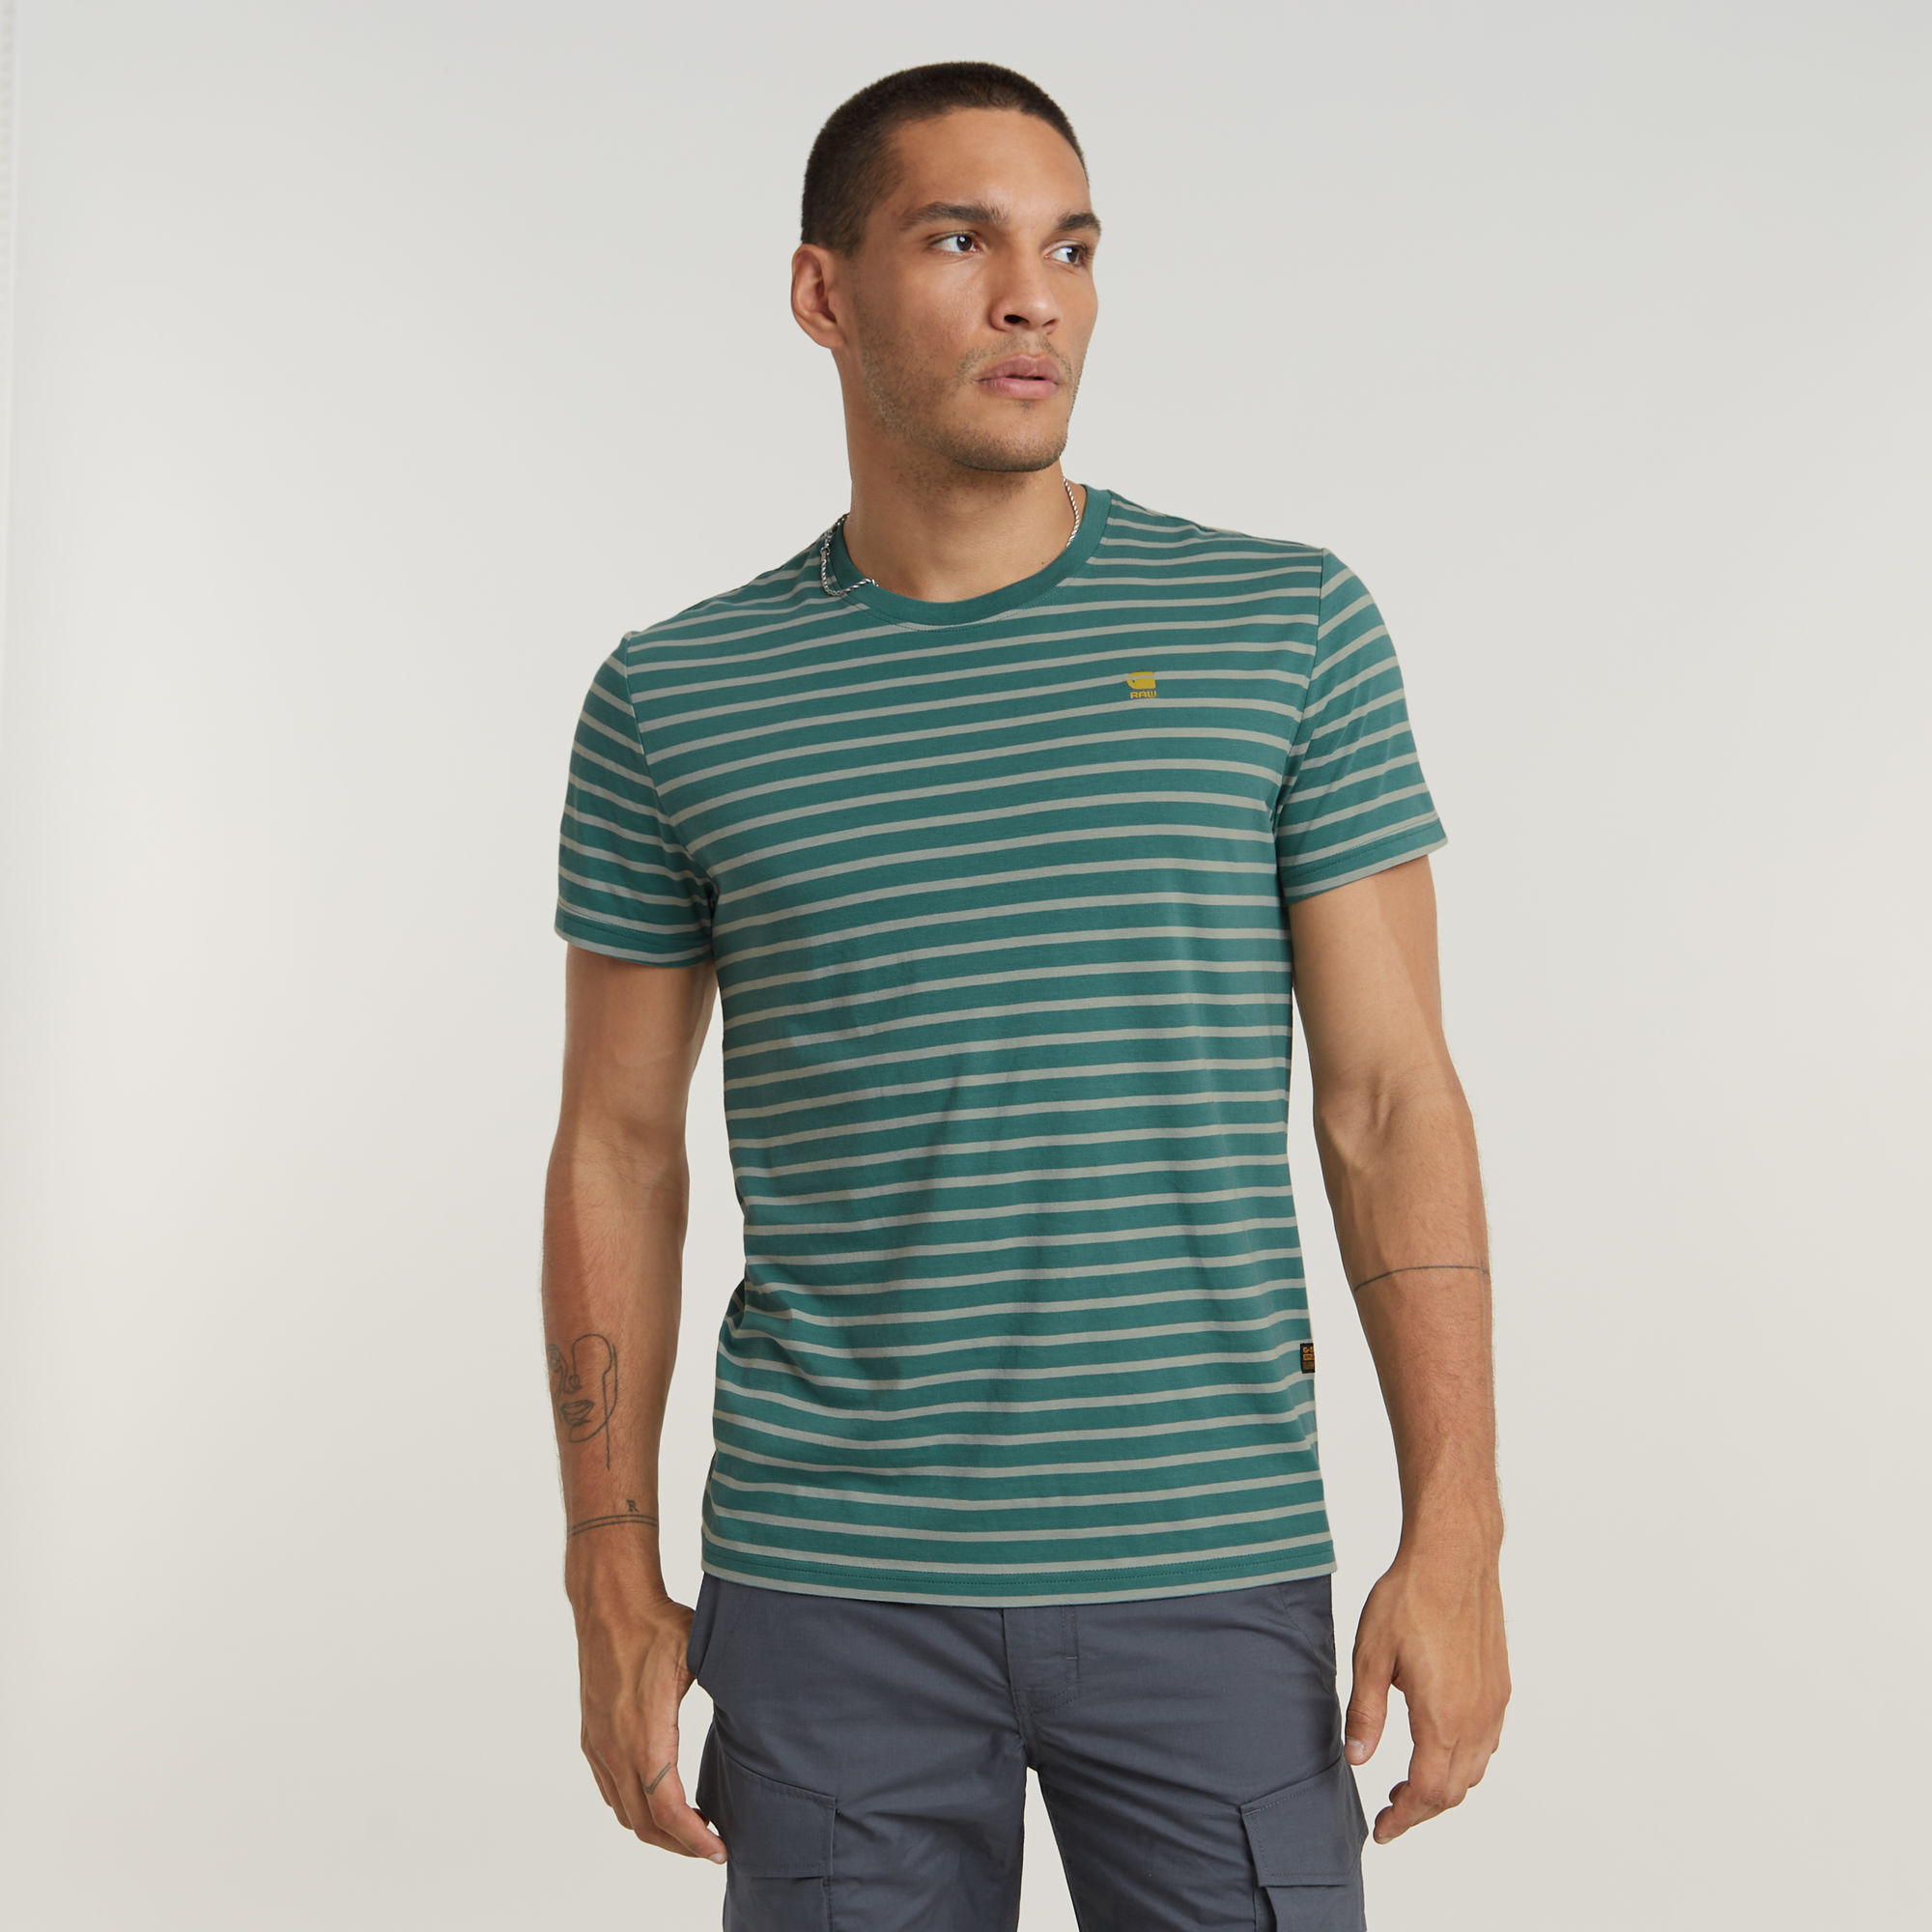 G-Star RAW gestreept slim fit T-shirt Stripe groen